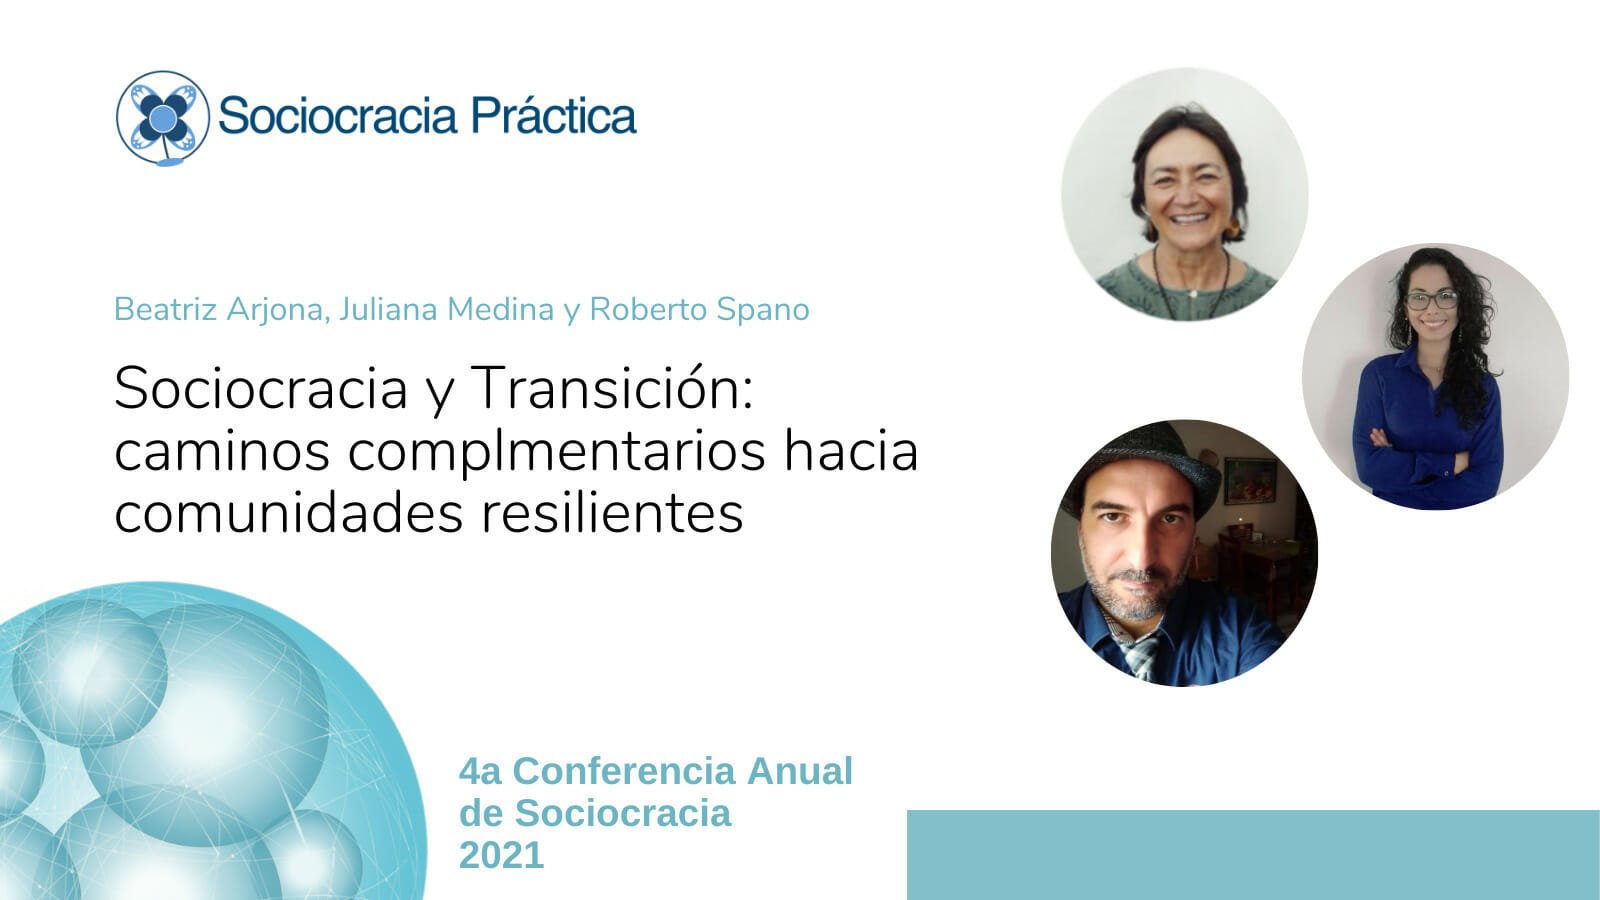 Sociocracia y transición: caminos complementarios hacia comunidades resilientes (Beatriz Arjona, Juliana Medina, Roberto Spano)